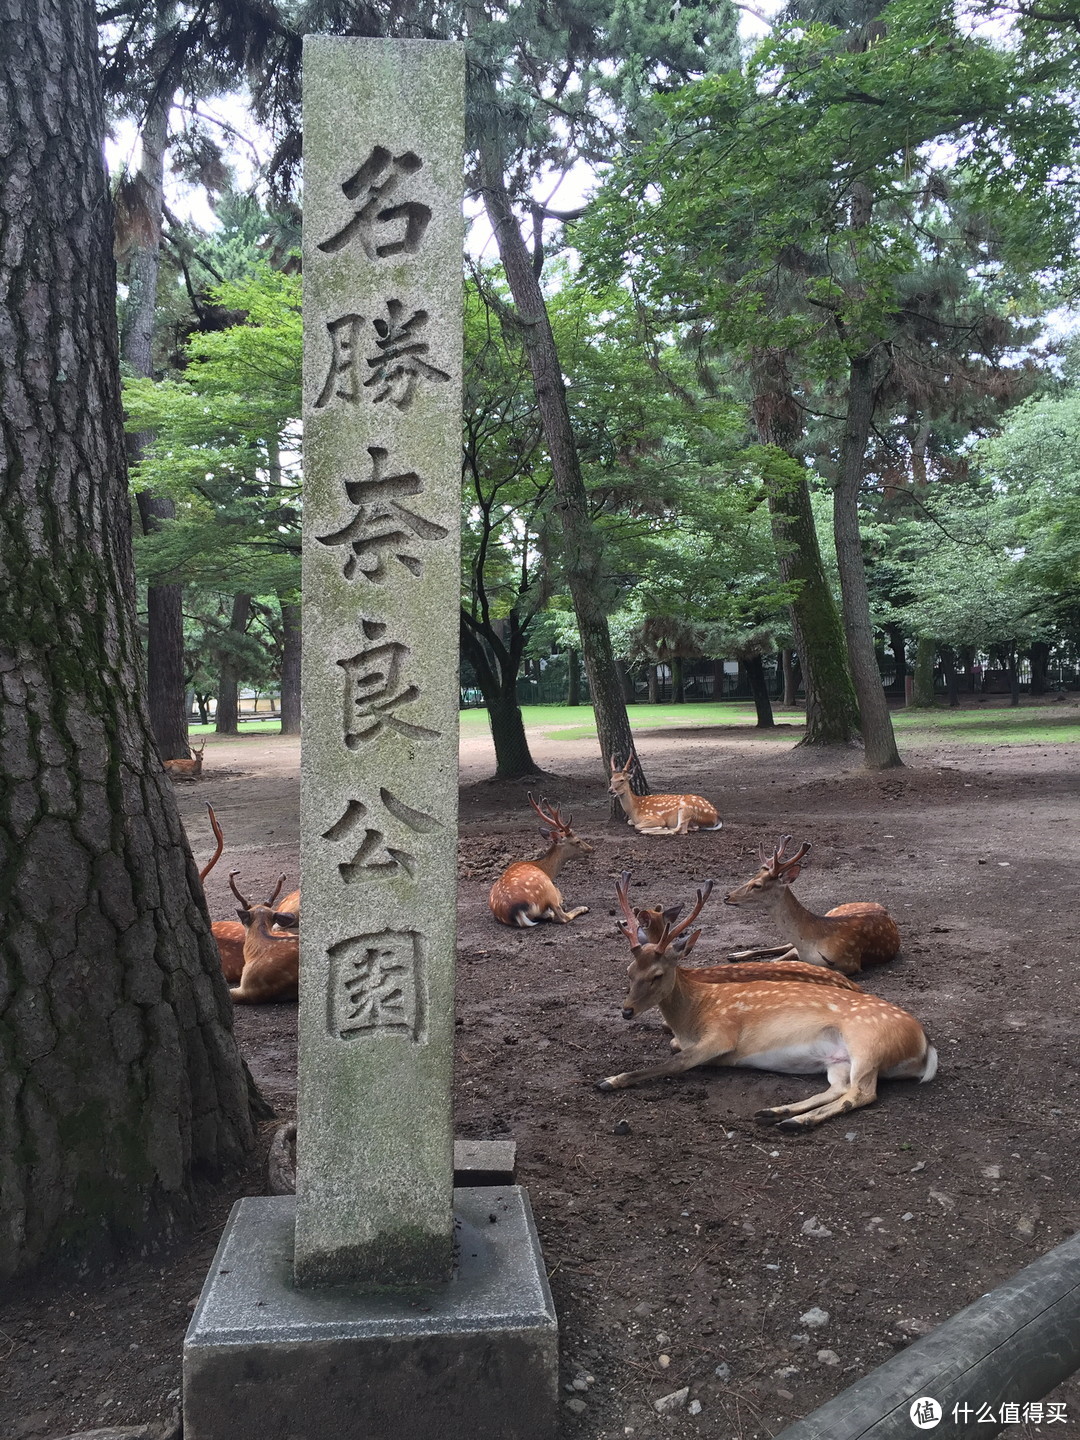 奈良公园入口处懒散的小鹿